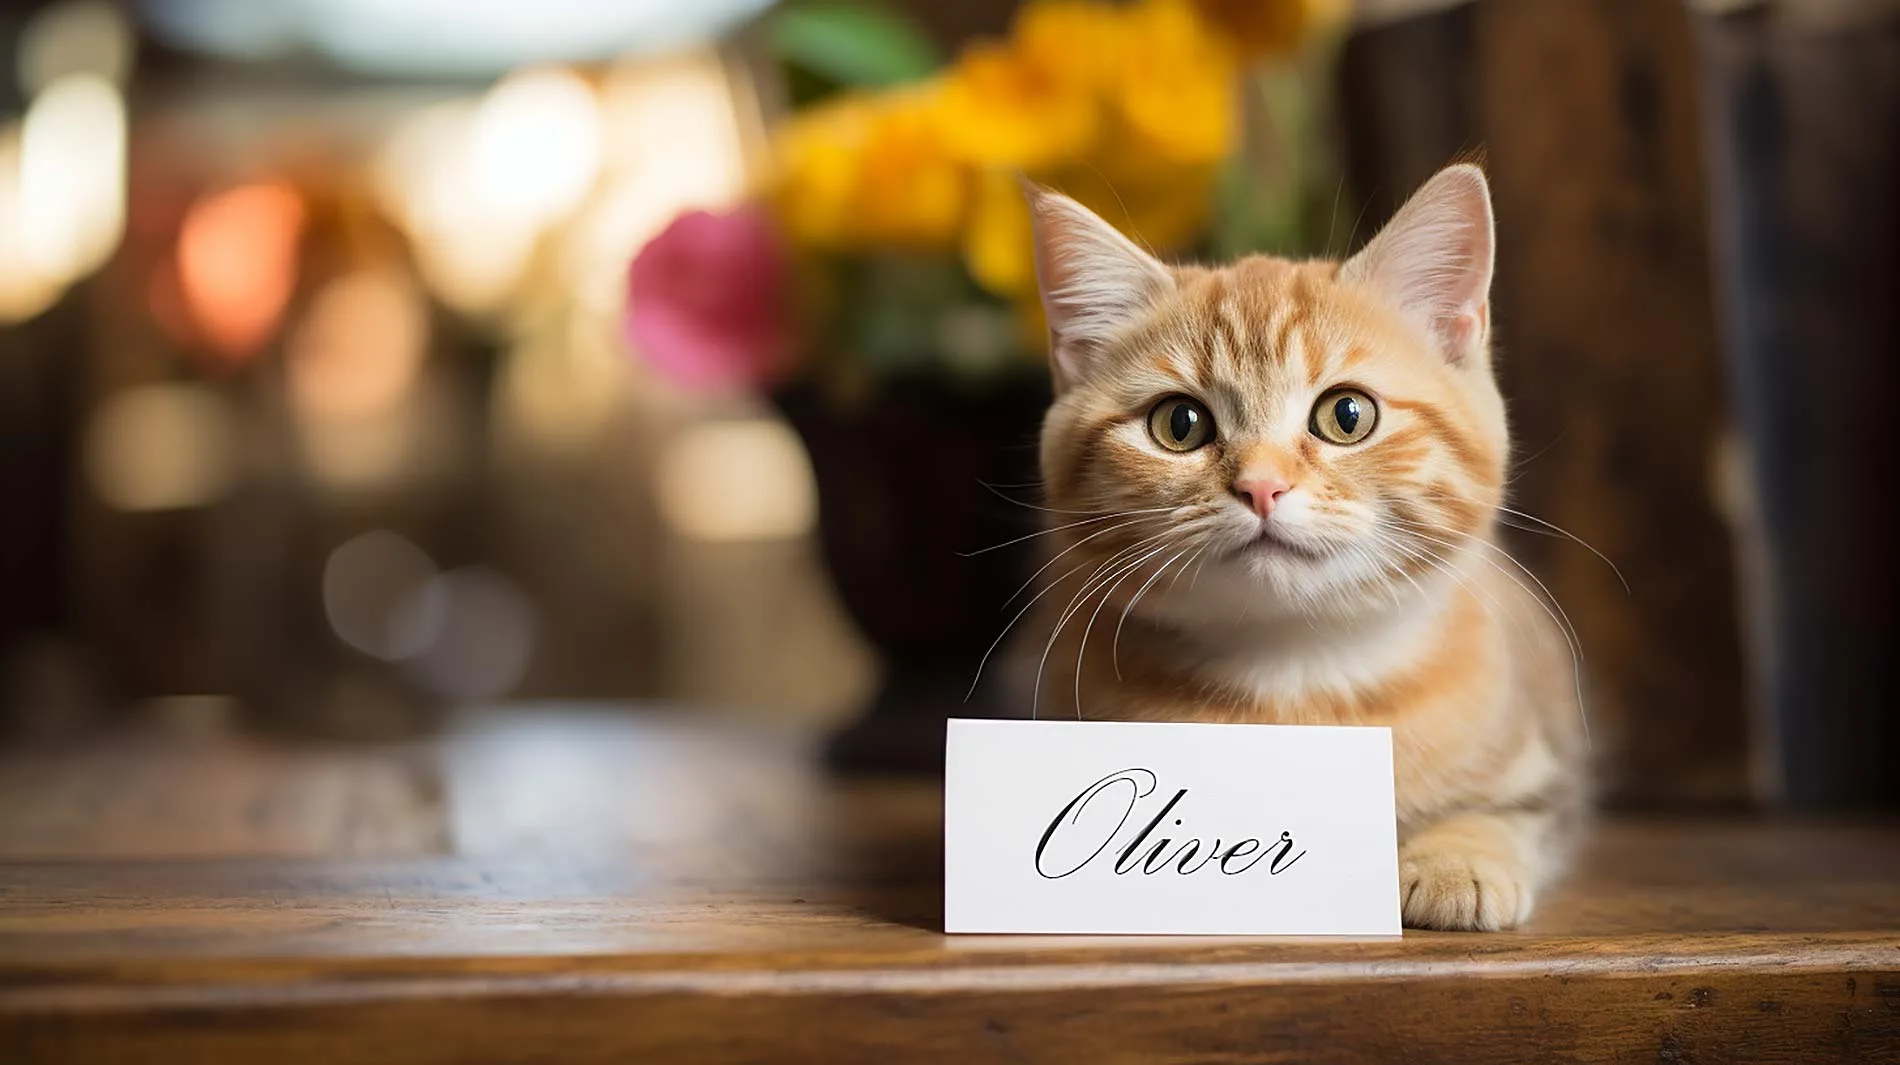 Rote Katze mit Namenschild vor sich, auf dem "Oliver" steht.